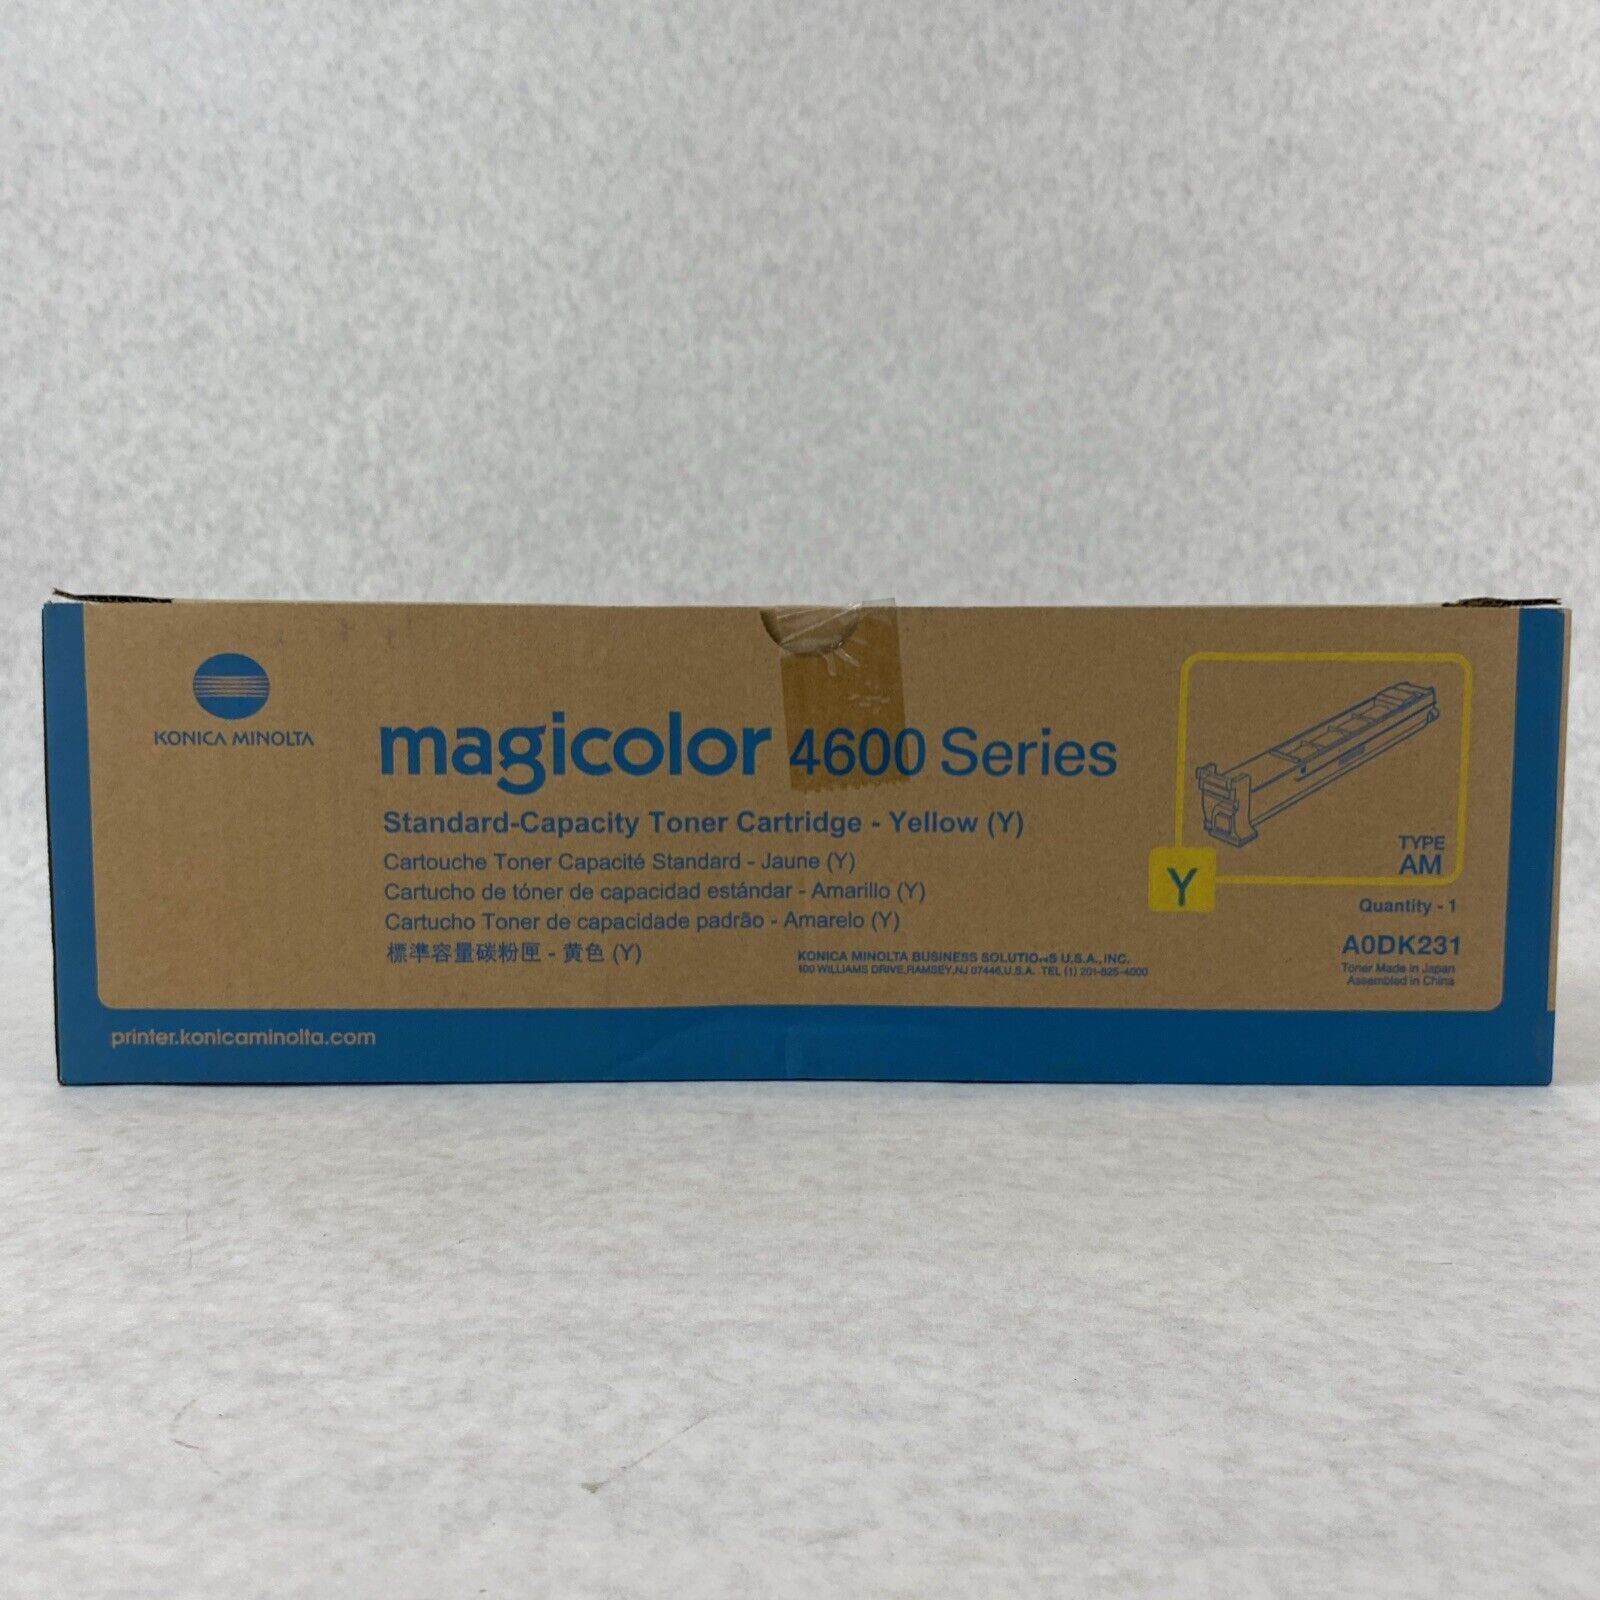 Genuine Konica Minolta A0DK231 Yellow AM Magicolor 4600 Series Toner